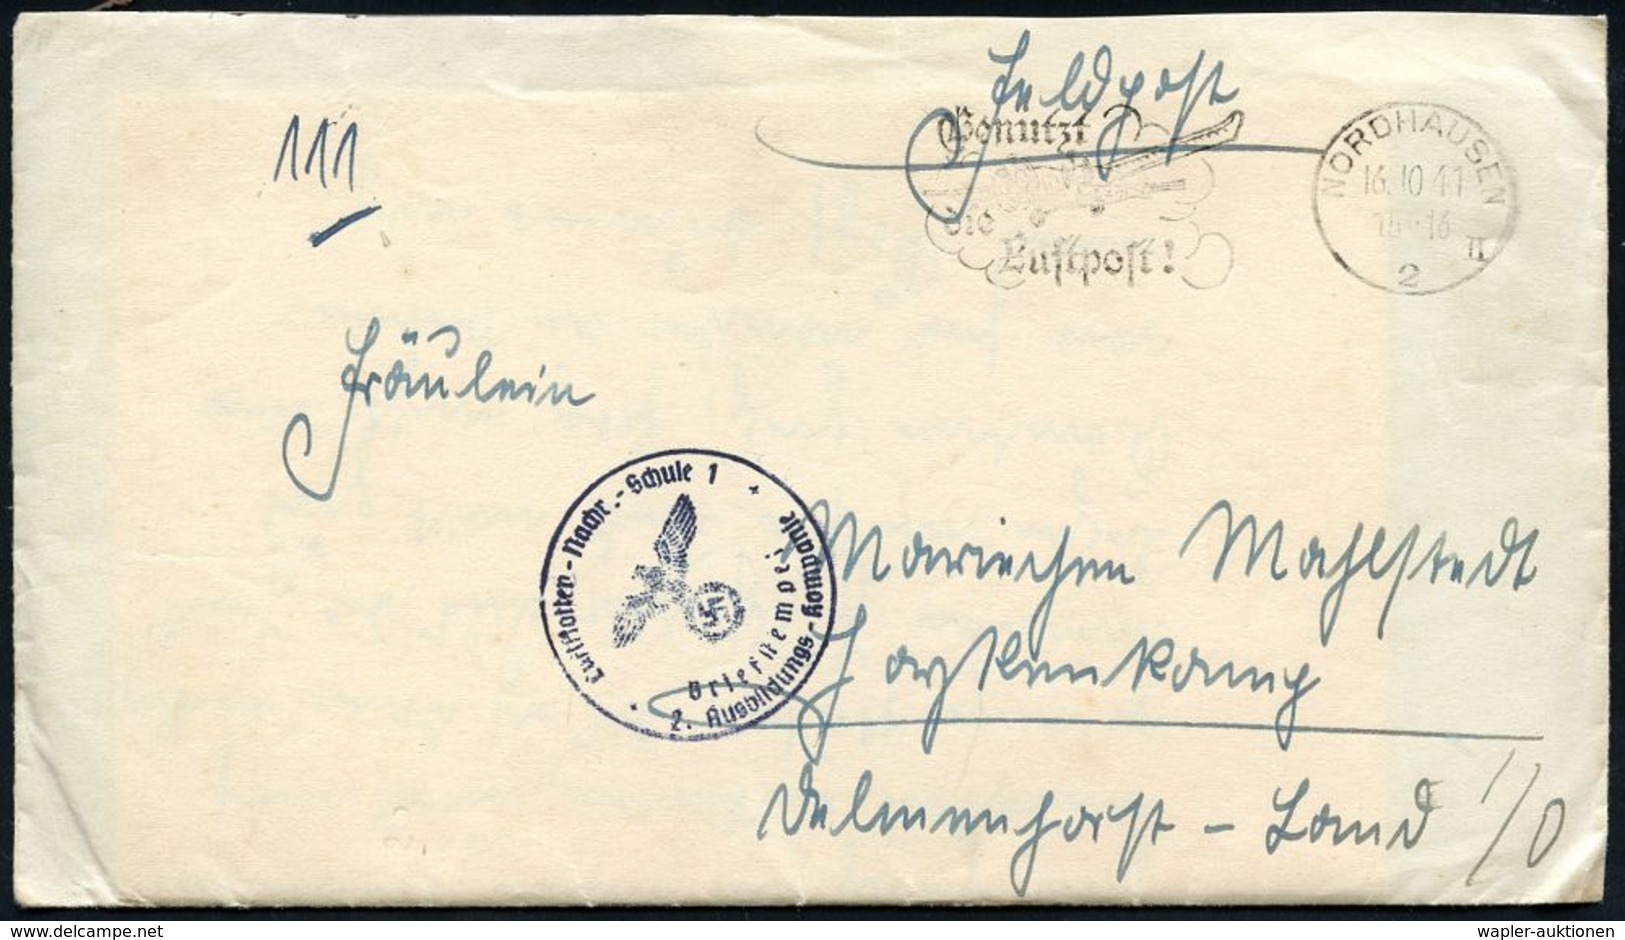 LUFTWAFFEN-FLUGSCHULEN & AKADEMIEN : NORDHAUSEN/ 2/ II/ Benutzt/ Die/ Luftpost! 1941 (14.10.) MWSt + Blauer 1K-HdN: Luft - Avions